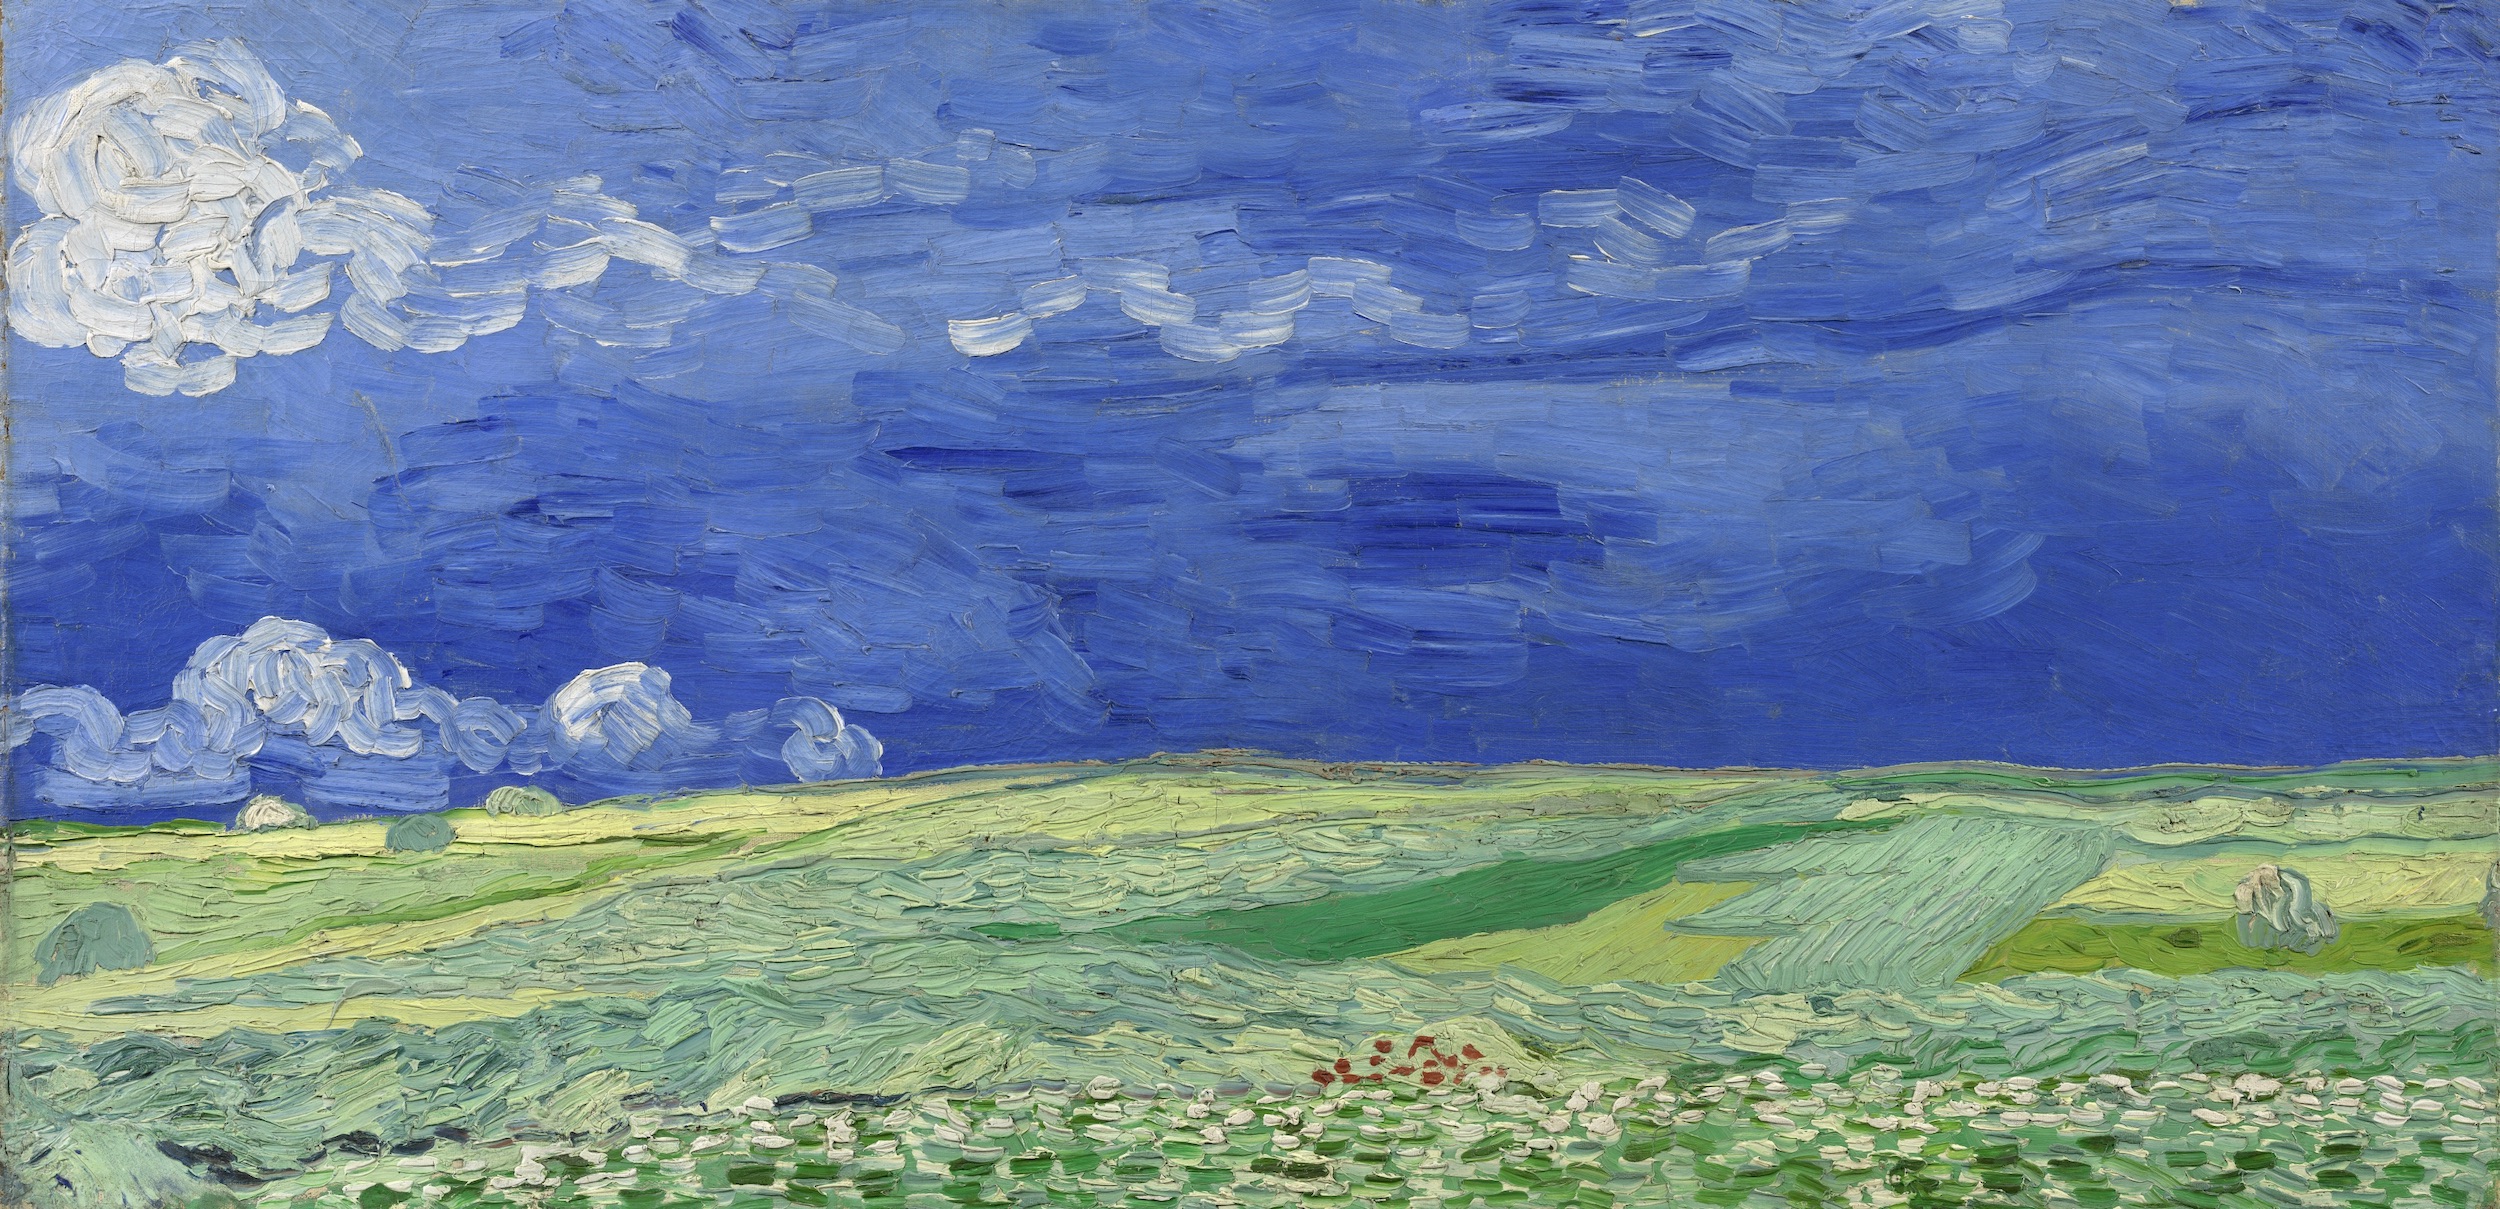 구름 낀 하늘 아래 밀밭 풍경(Wheatfield under Thunderclouds) by 빈센트 반 고흐 - 1890년 7월 - 50.4 x 101.3 cm 